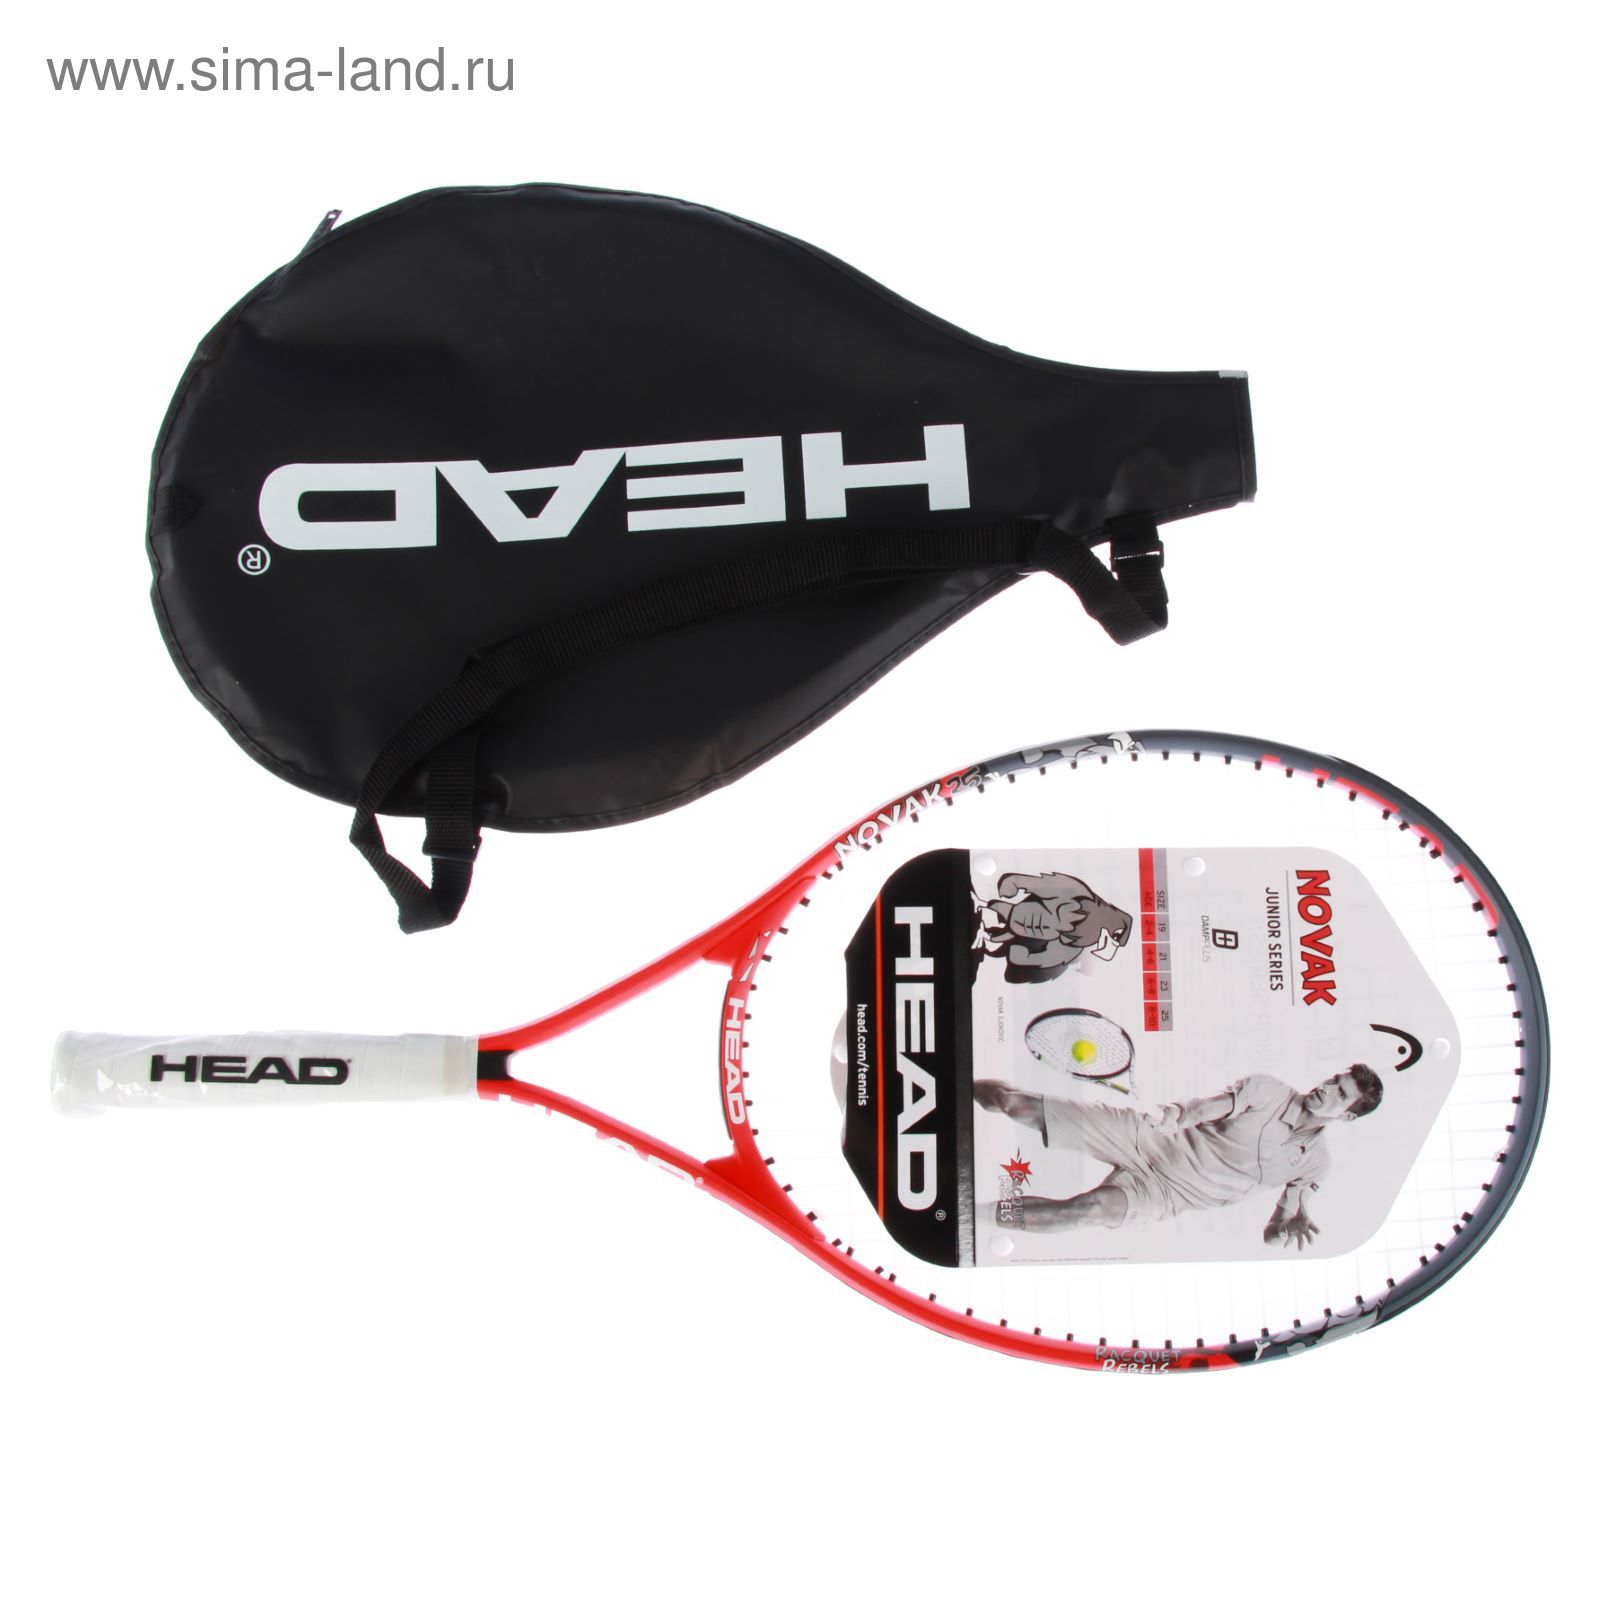 Ракетка для большого тенниса детская Head Novak 25 Gr07, для 8-10 лет